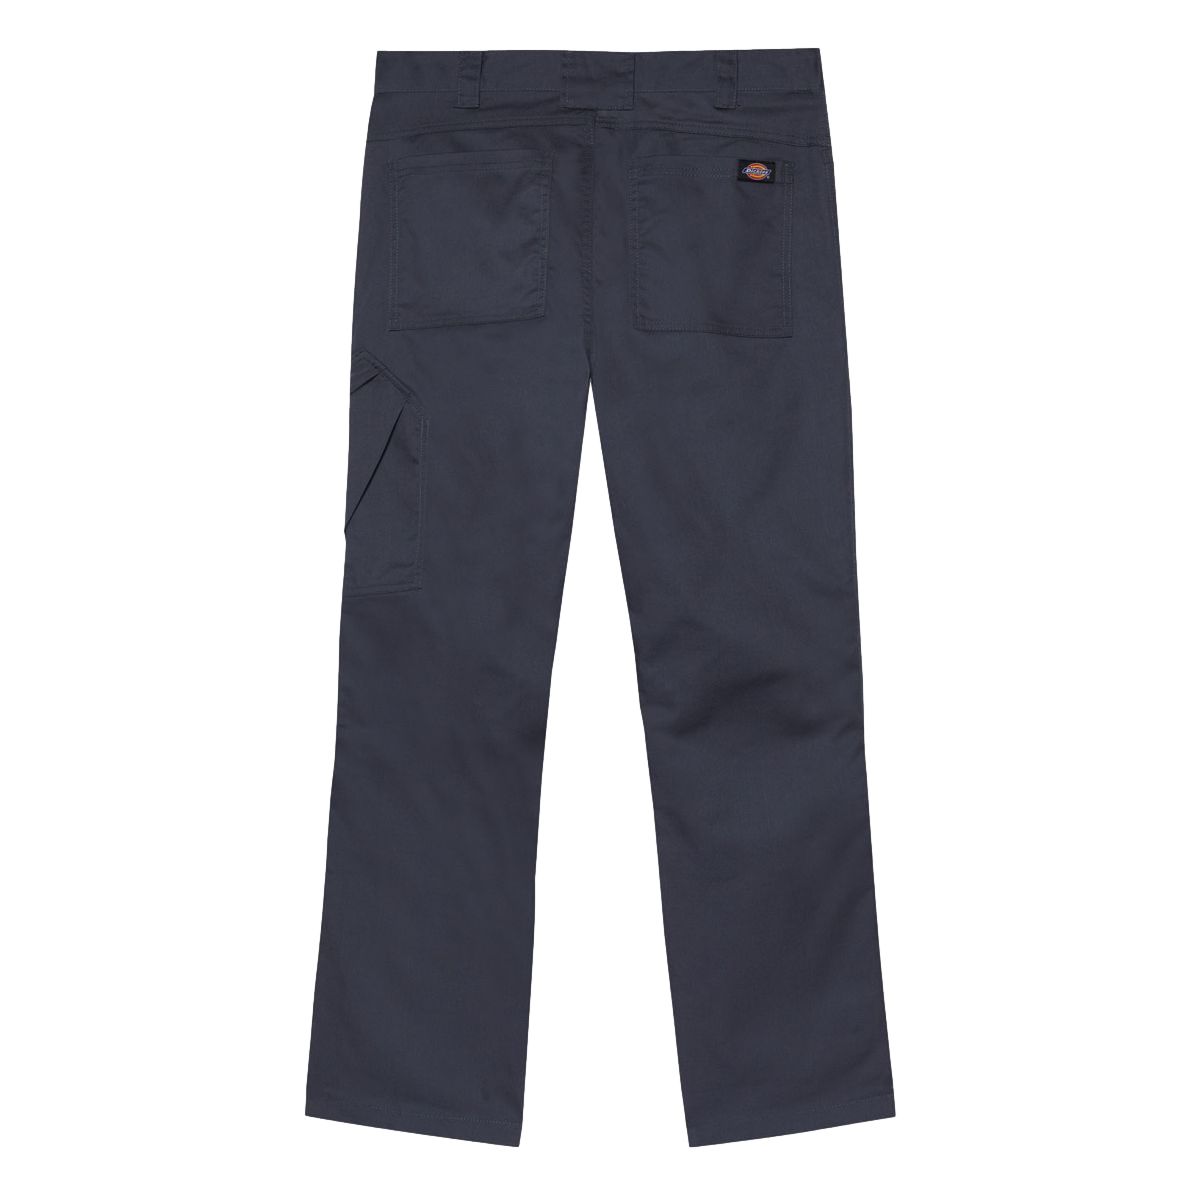 Pantalon de travail Action Flex gris - Dickies - Taille 38 2